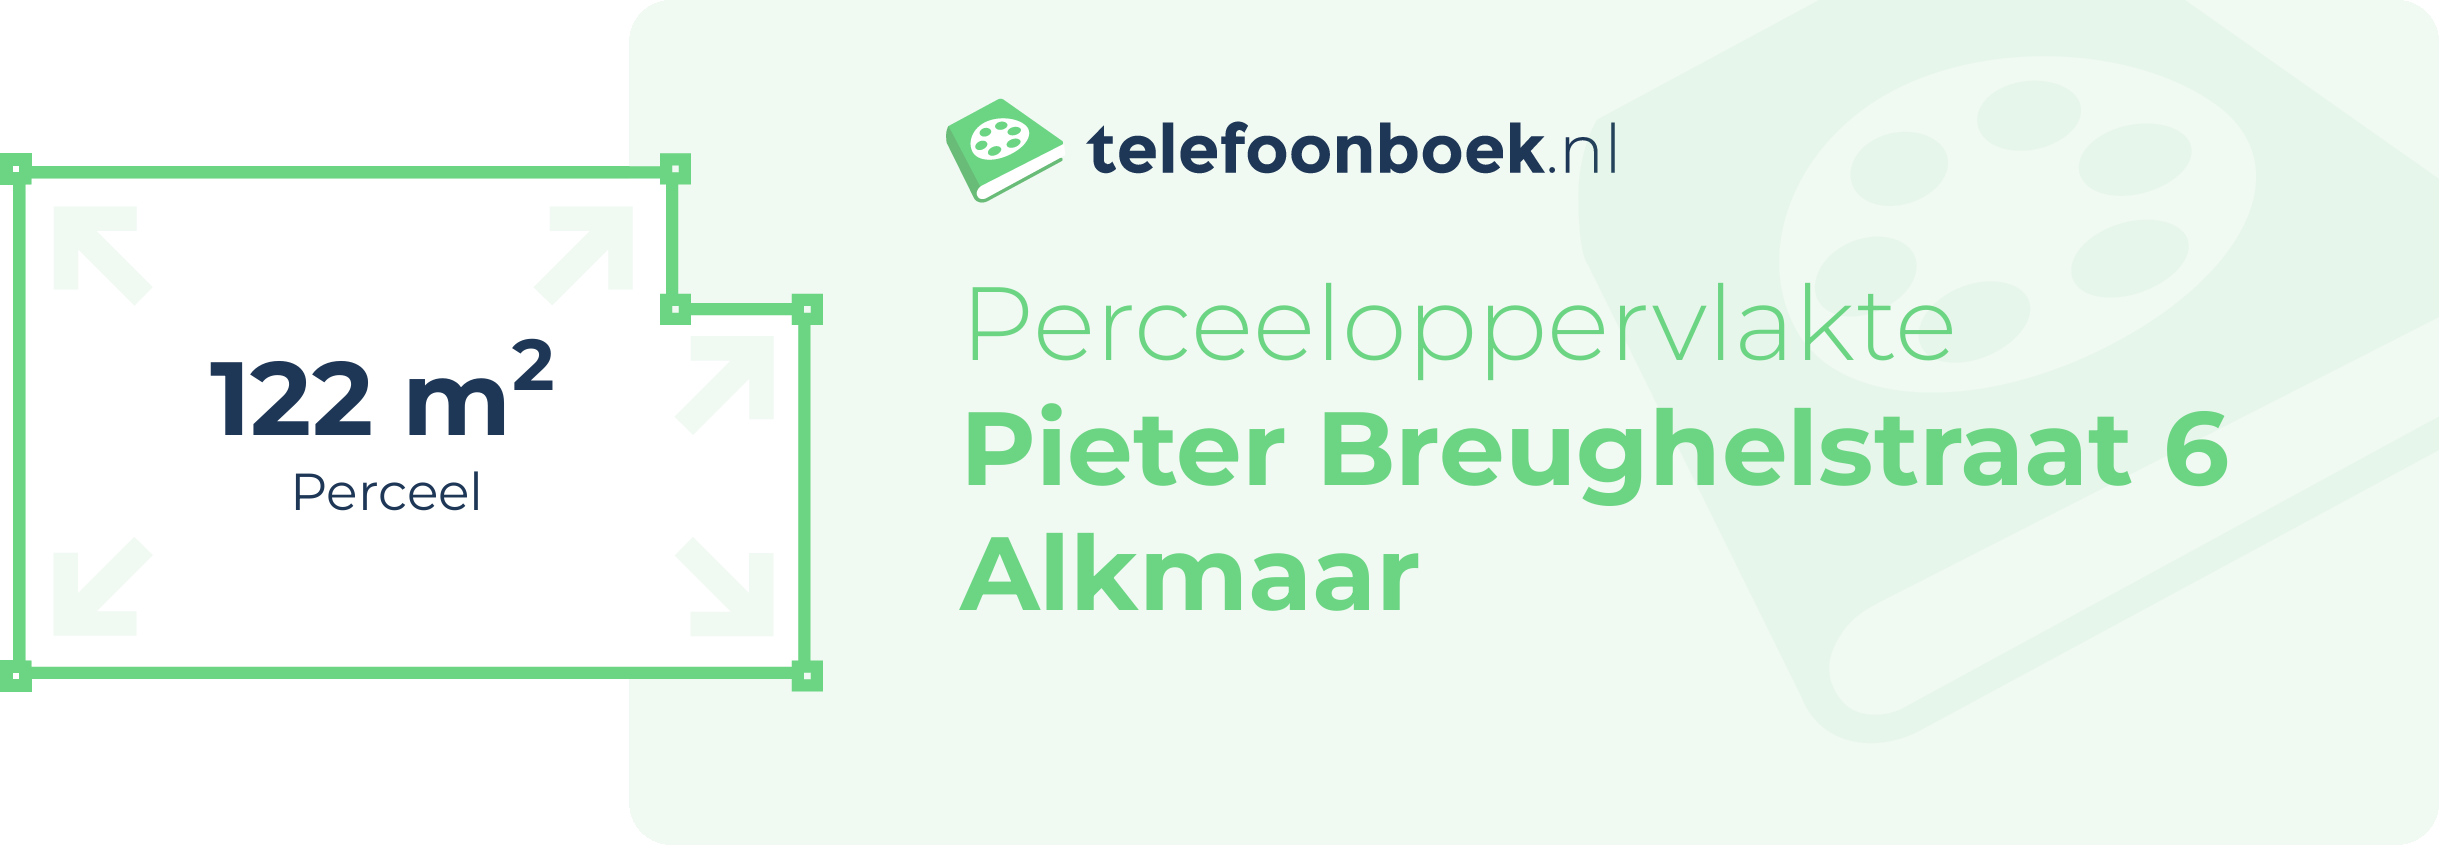 Perceeloppervlakte Pieter Breughelstraat 6 Alkmaar